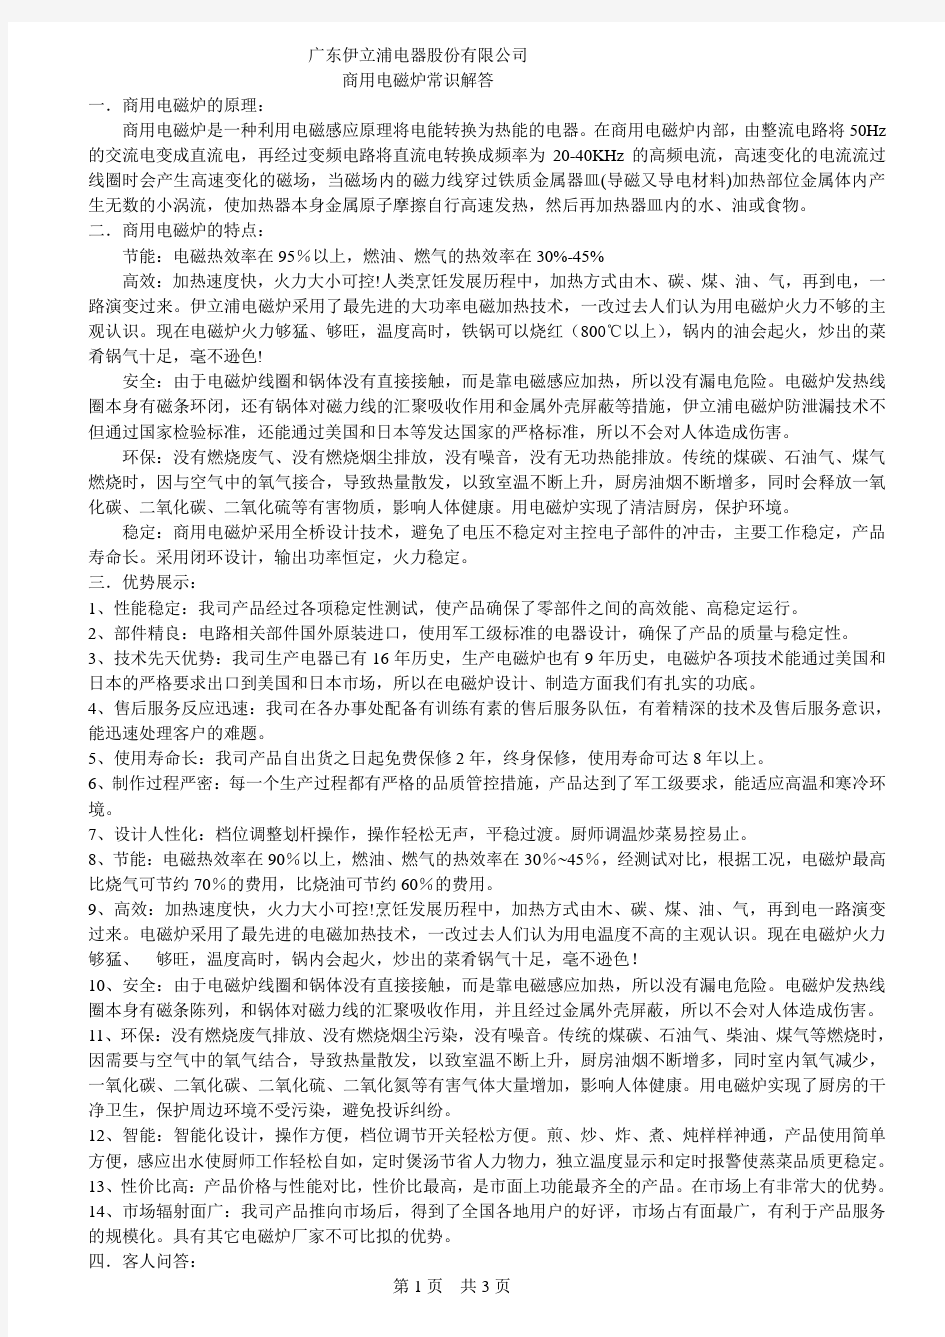 广东伊立浦电器股份有限公司商用电磁炉常识解答